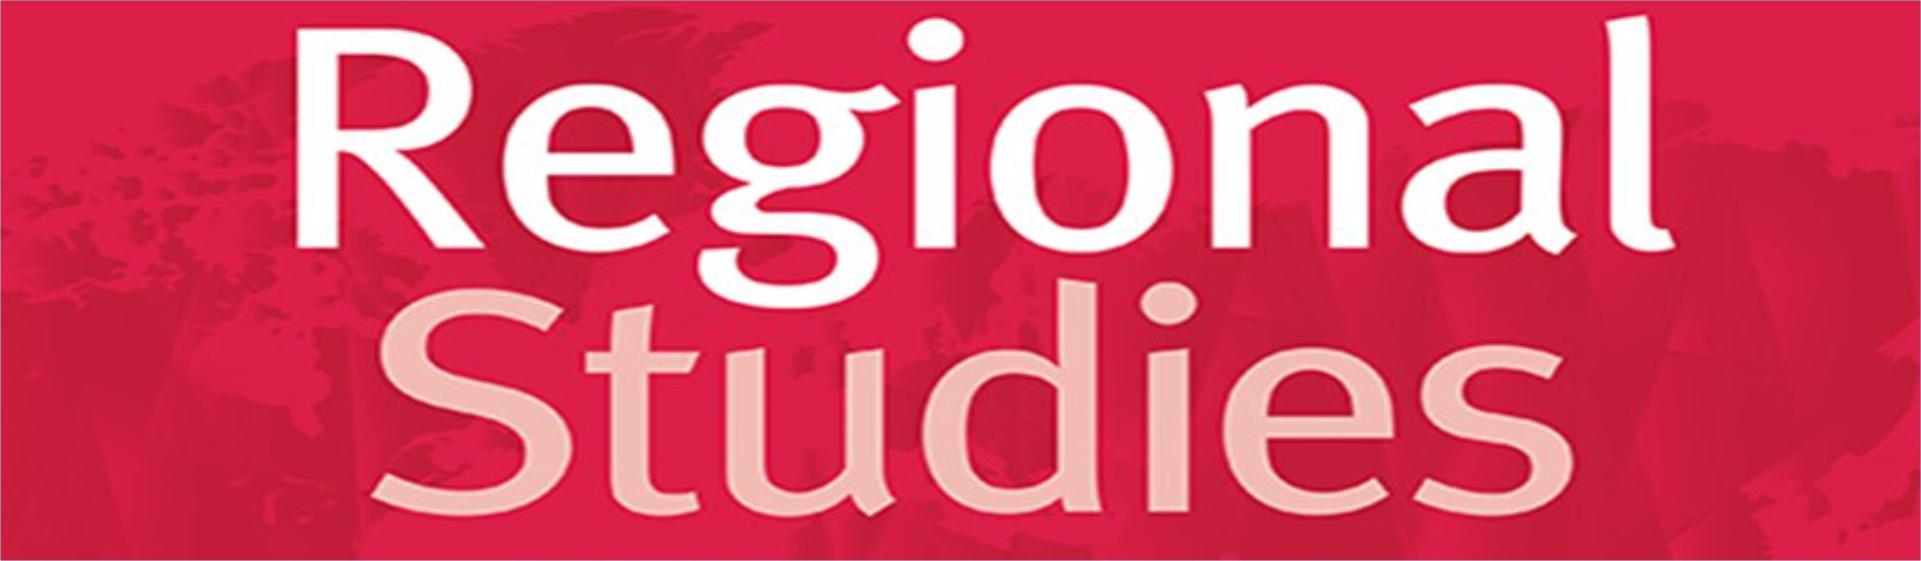 Sergio Montero fue nombrado editor de Regional Studies  Cider | Uniandes